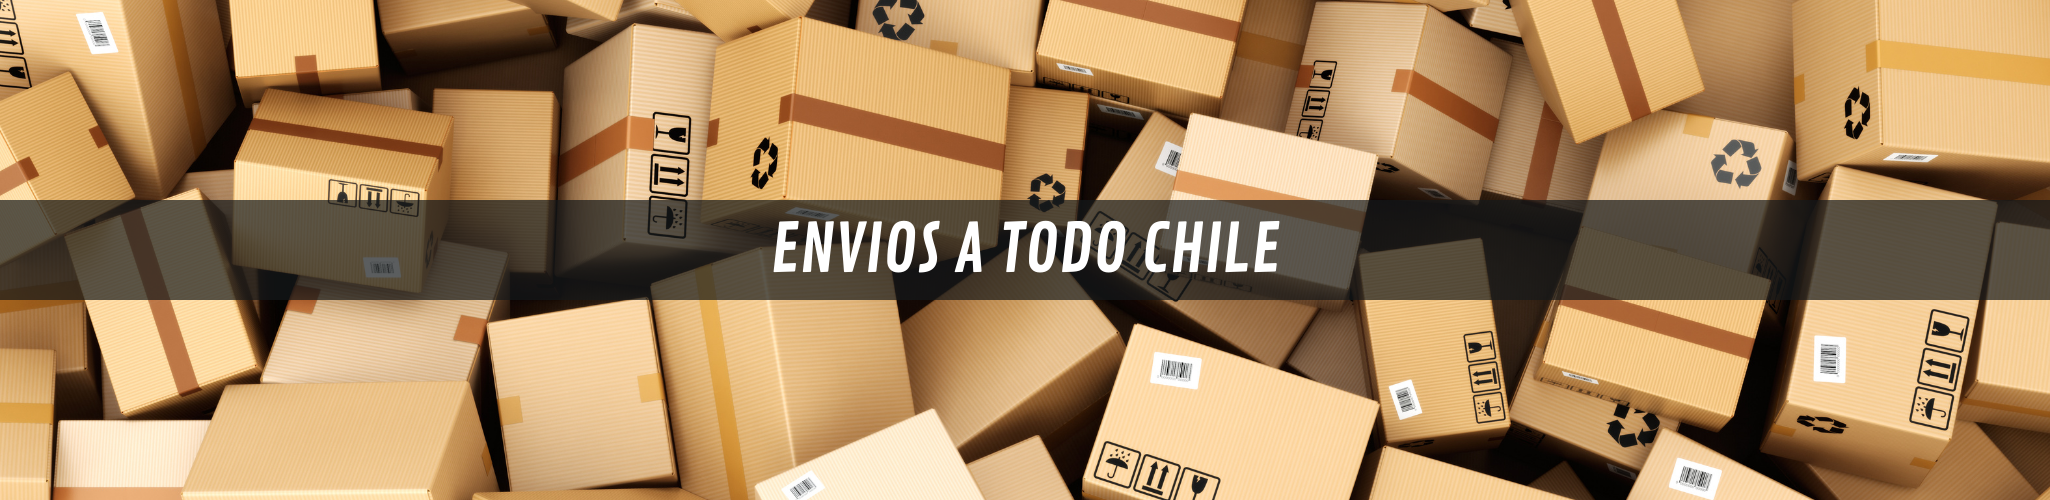 ENVIOS A TODO CHILE